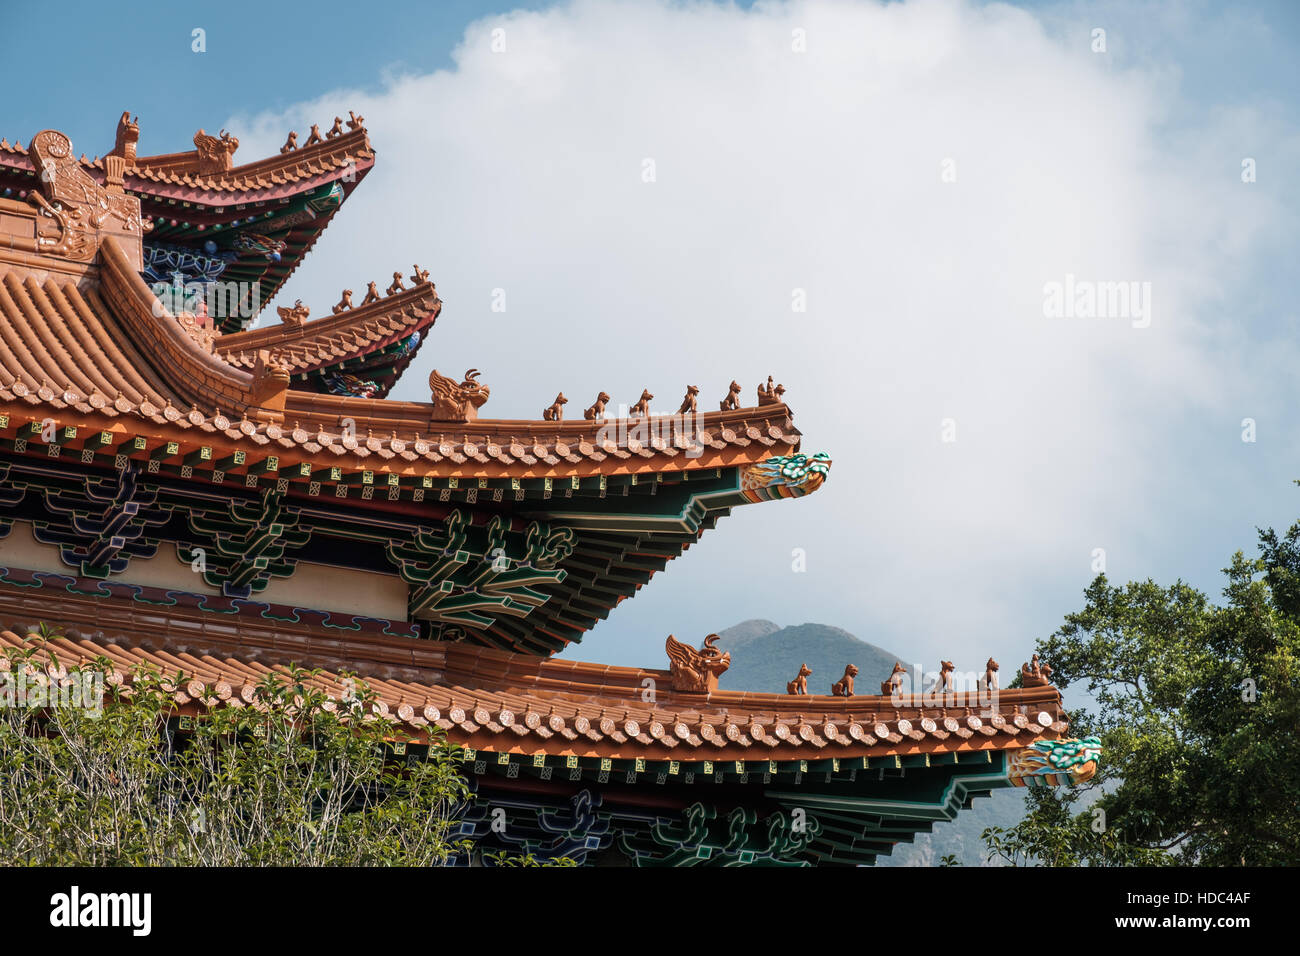 Teil des Daches mit dekorativen Kreaturen und Tiere bei dem Hauptschrein Po Lin Kloster Lantau Insel Hongkong Asien Stockfoto